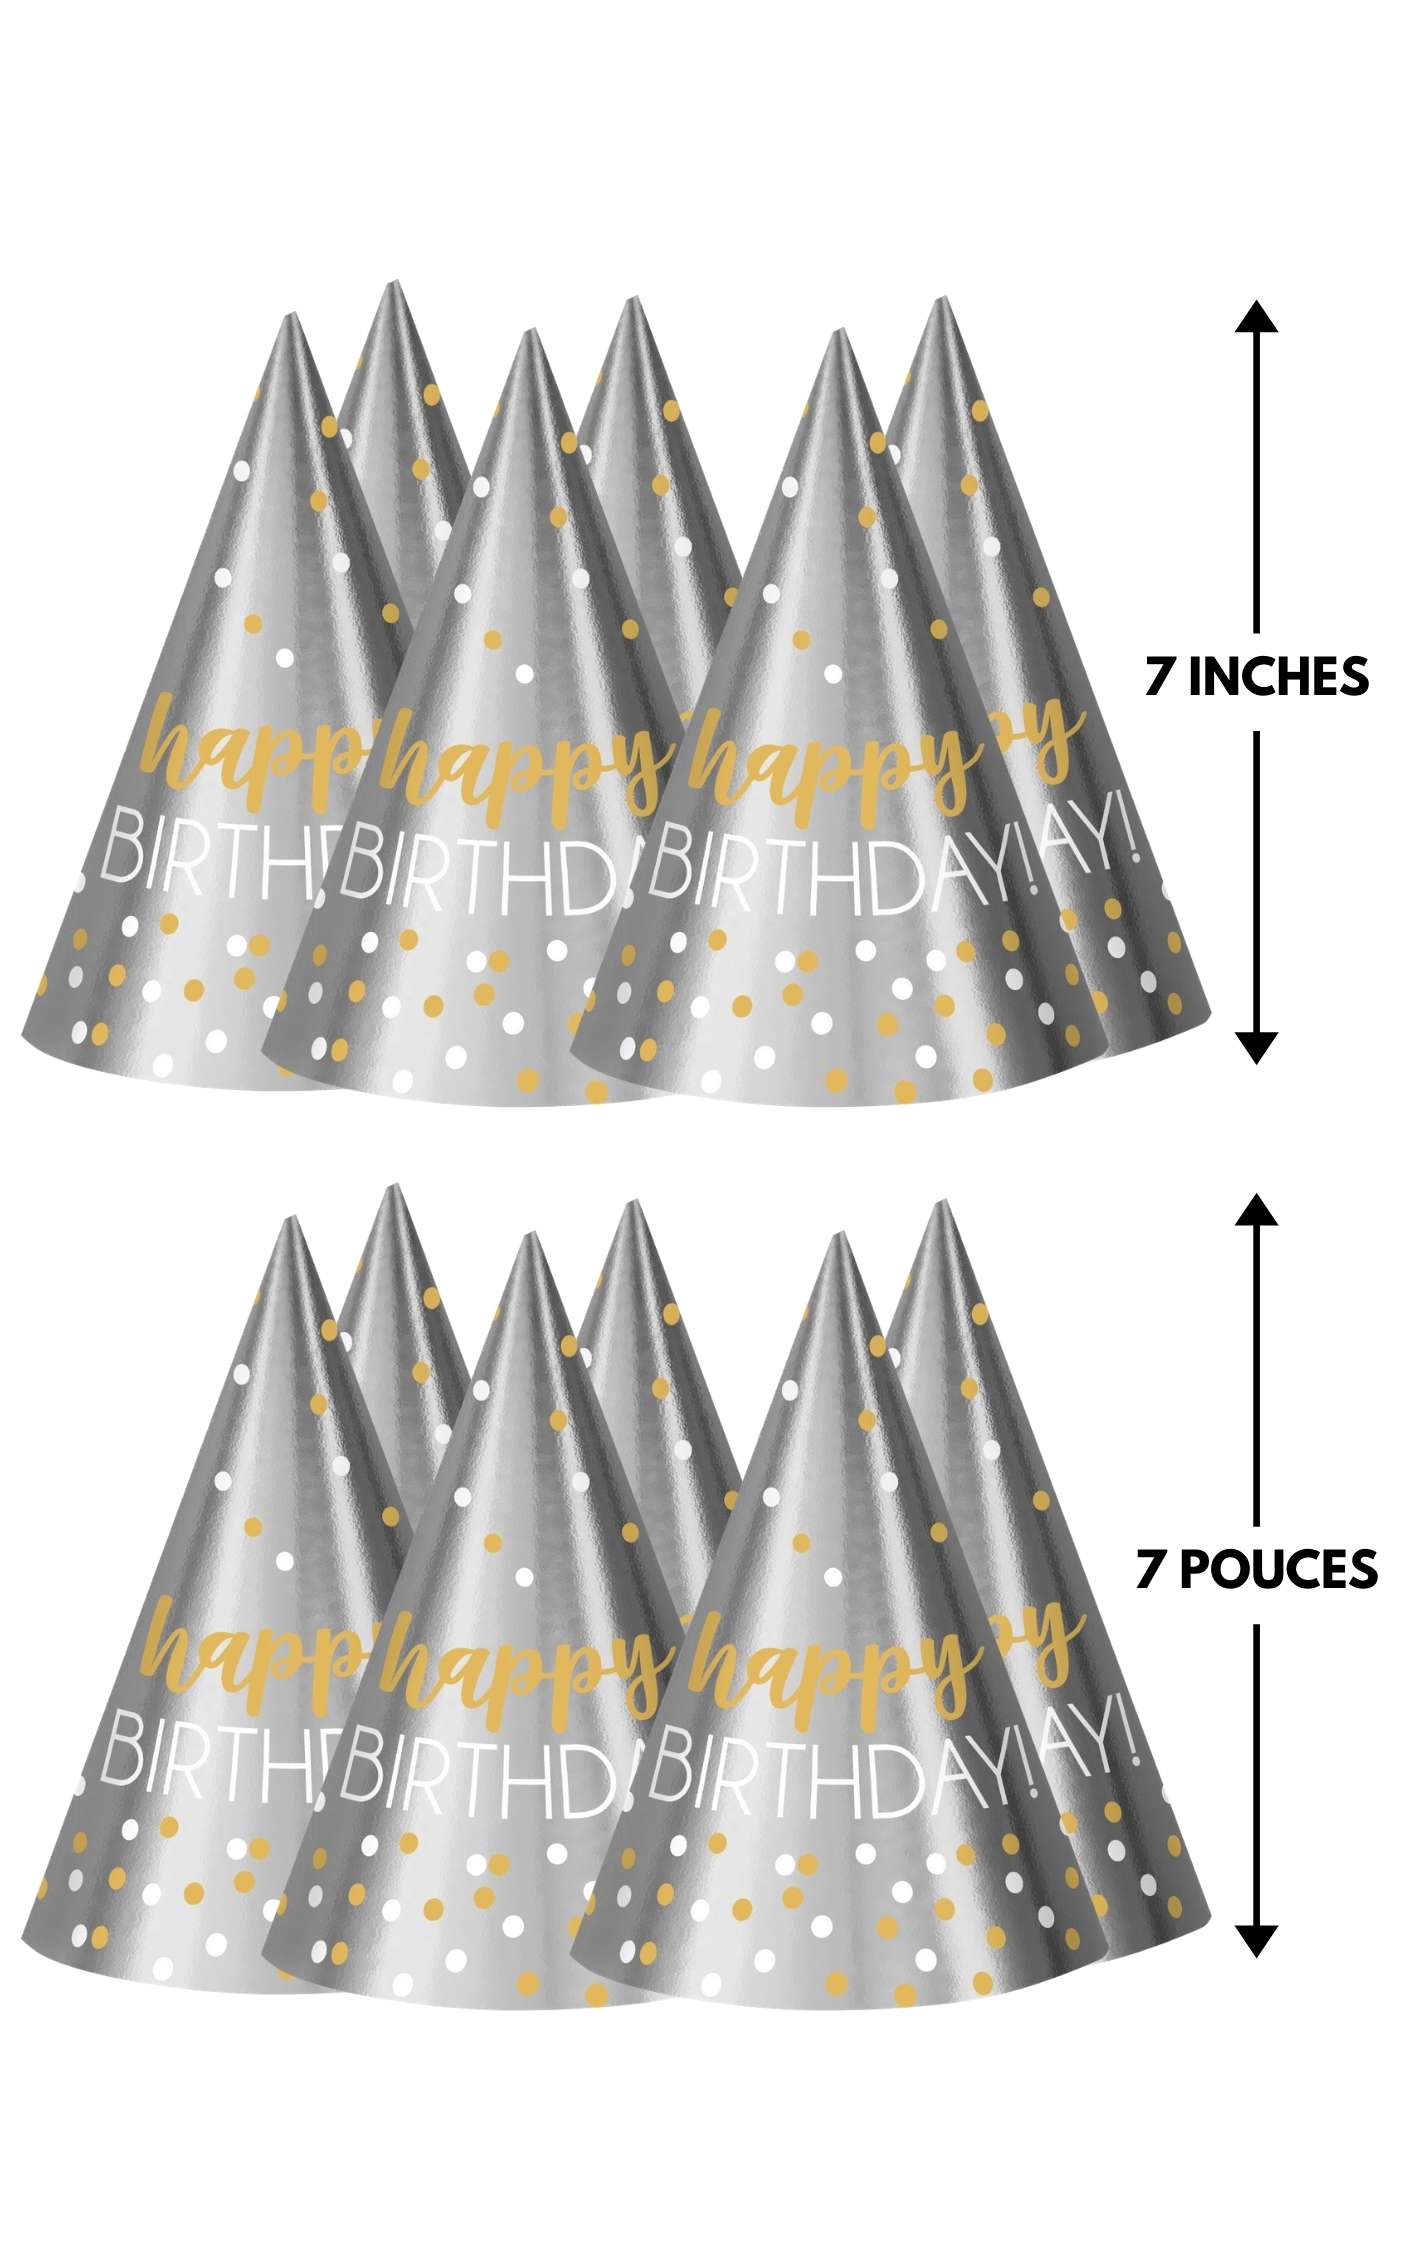 12 chapeaux coniques accessoires d'anniversaire feuille d'argent et d'or/papier - 7 pouces